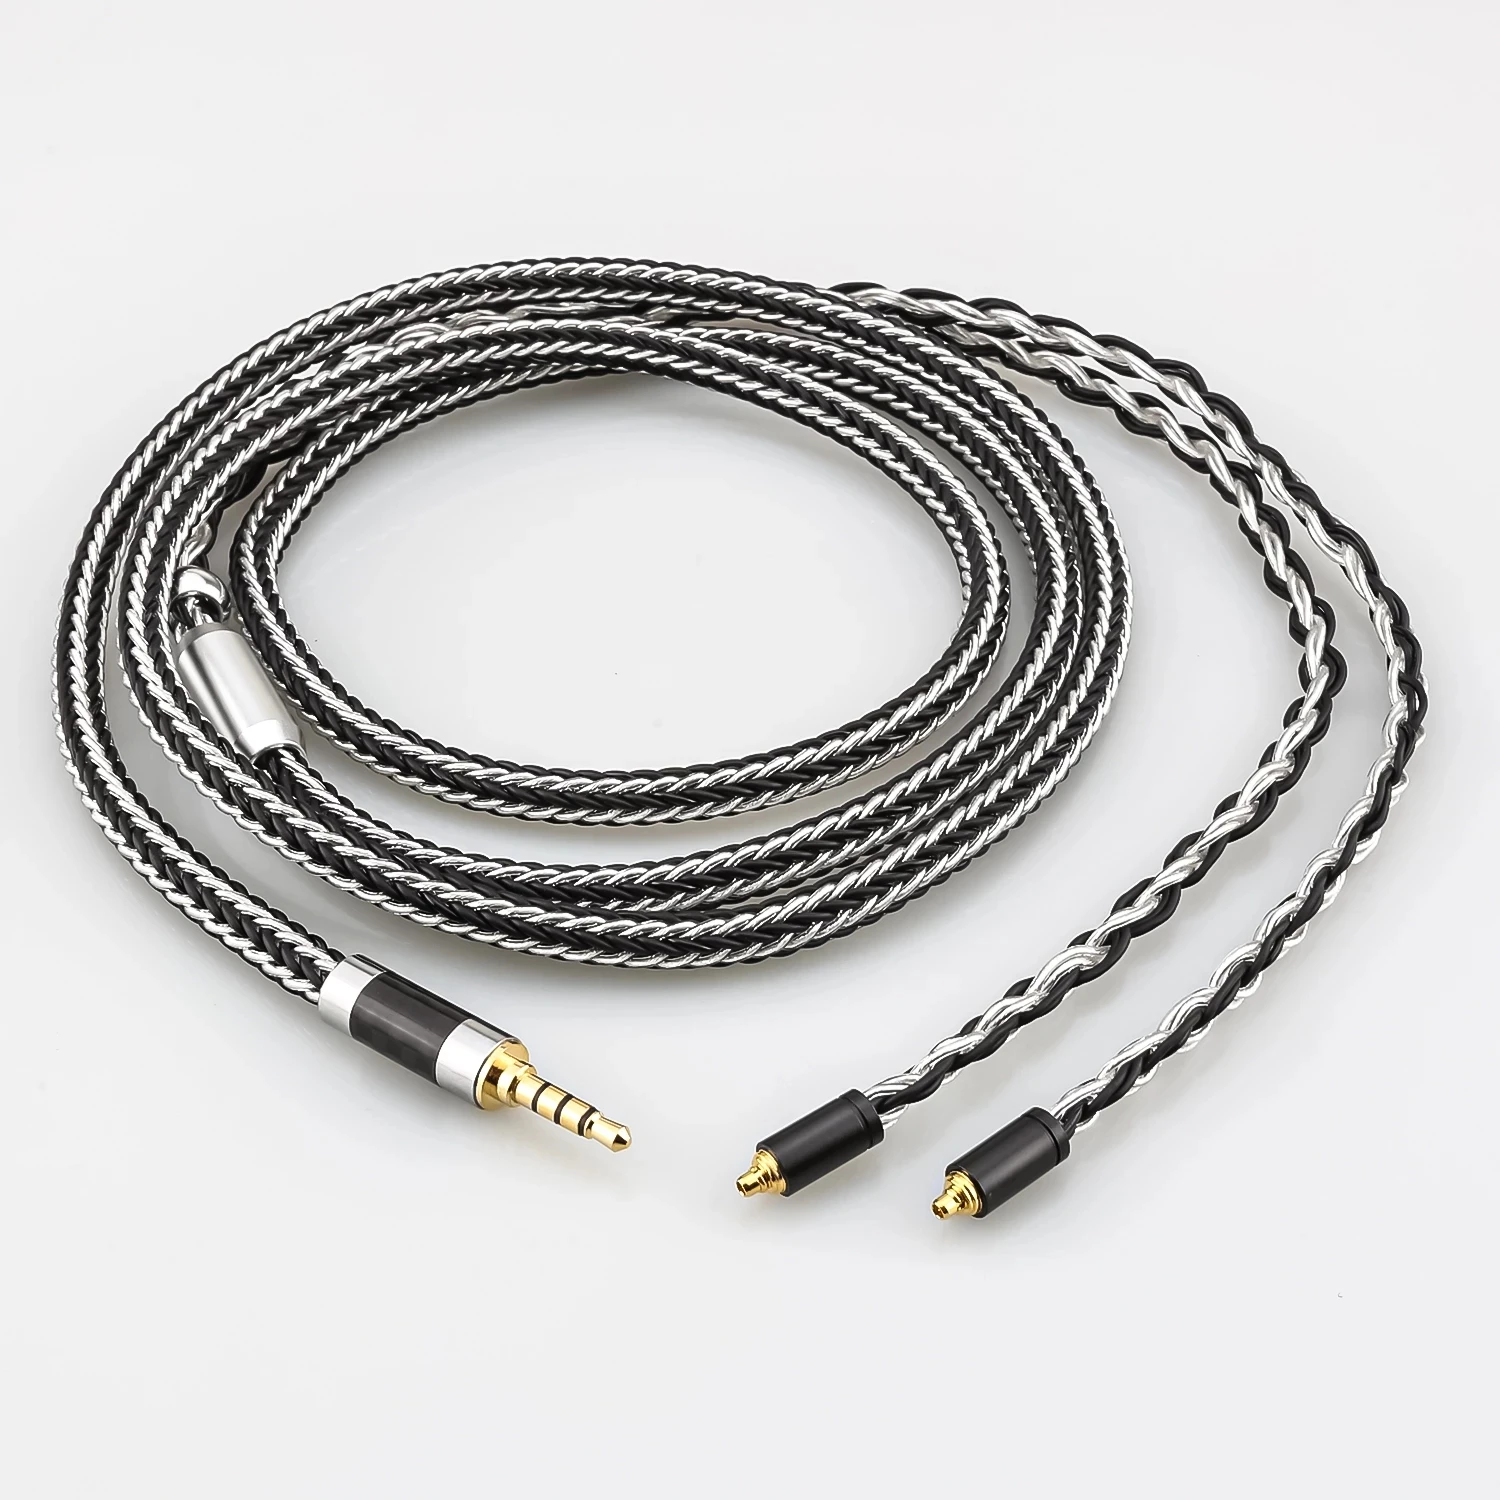 

New 4.4mm 2.5mm 3.5mm XLR Balanced 16 Core 99% 7N OCC Headphone upgraded Cable For AKG N5005 N30 N40 MMCX IE300